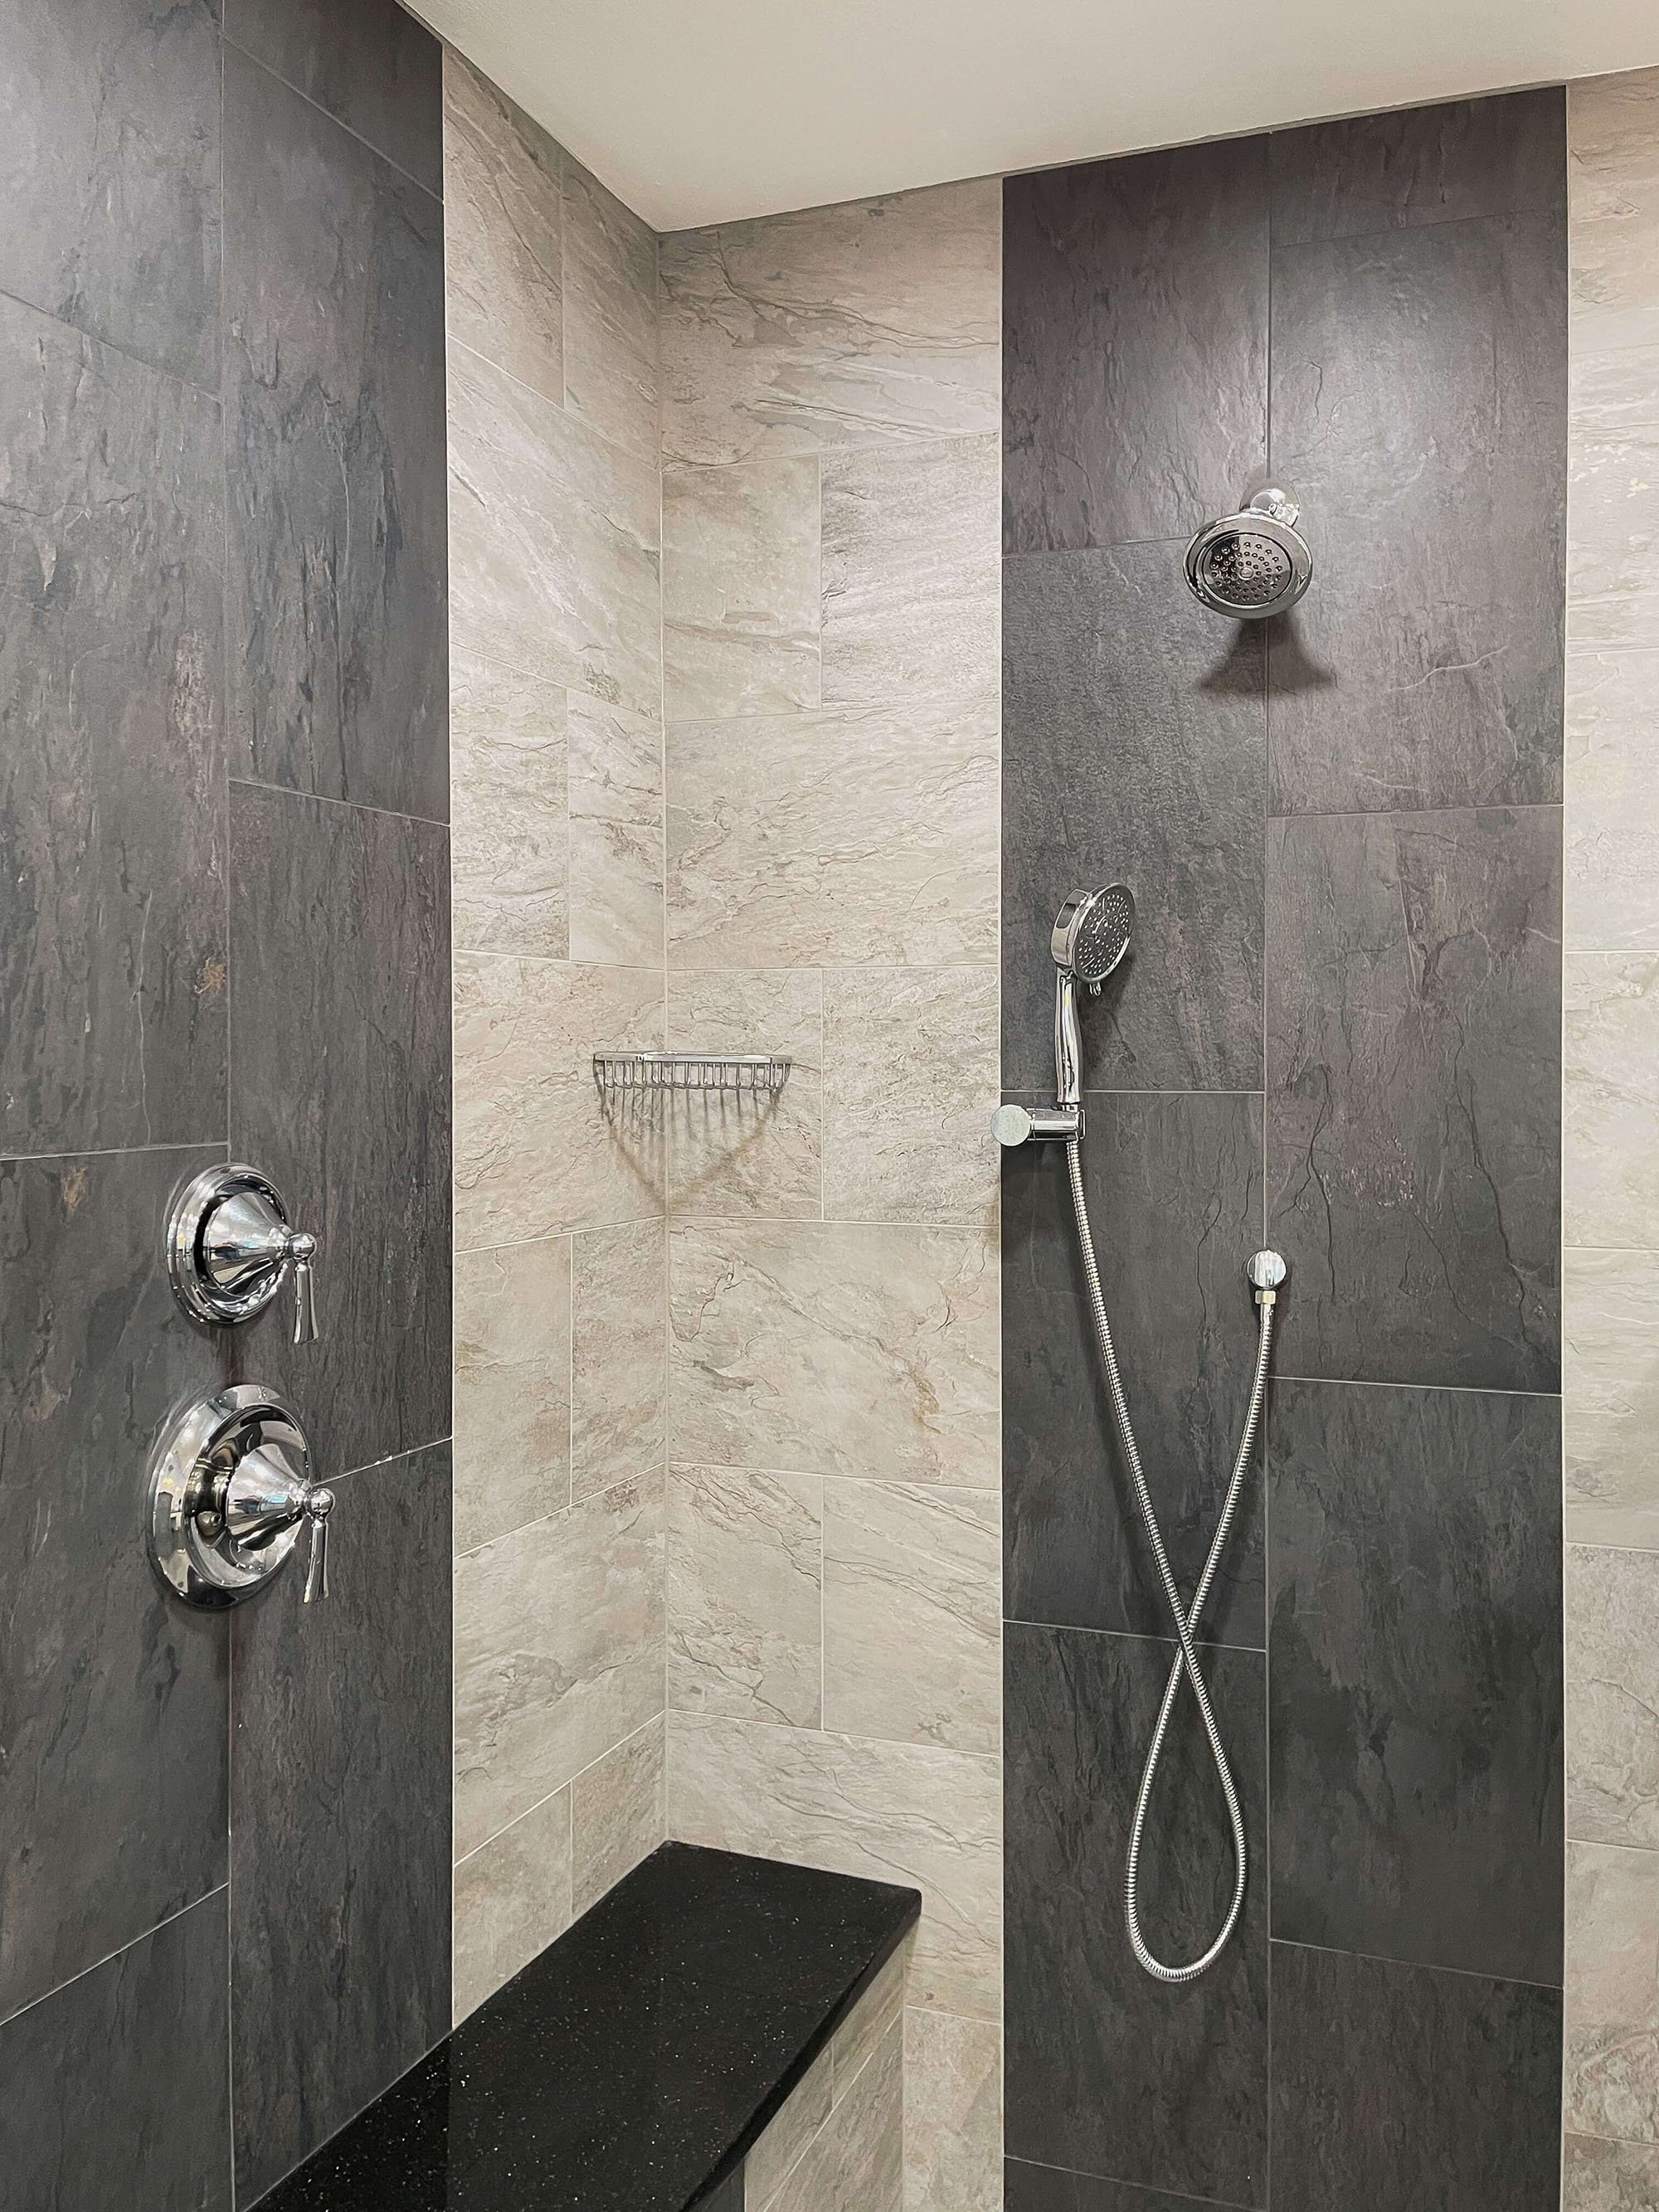 bathroom-remodel-walk-in-shower-silver-fixtures-1